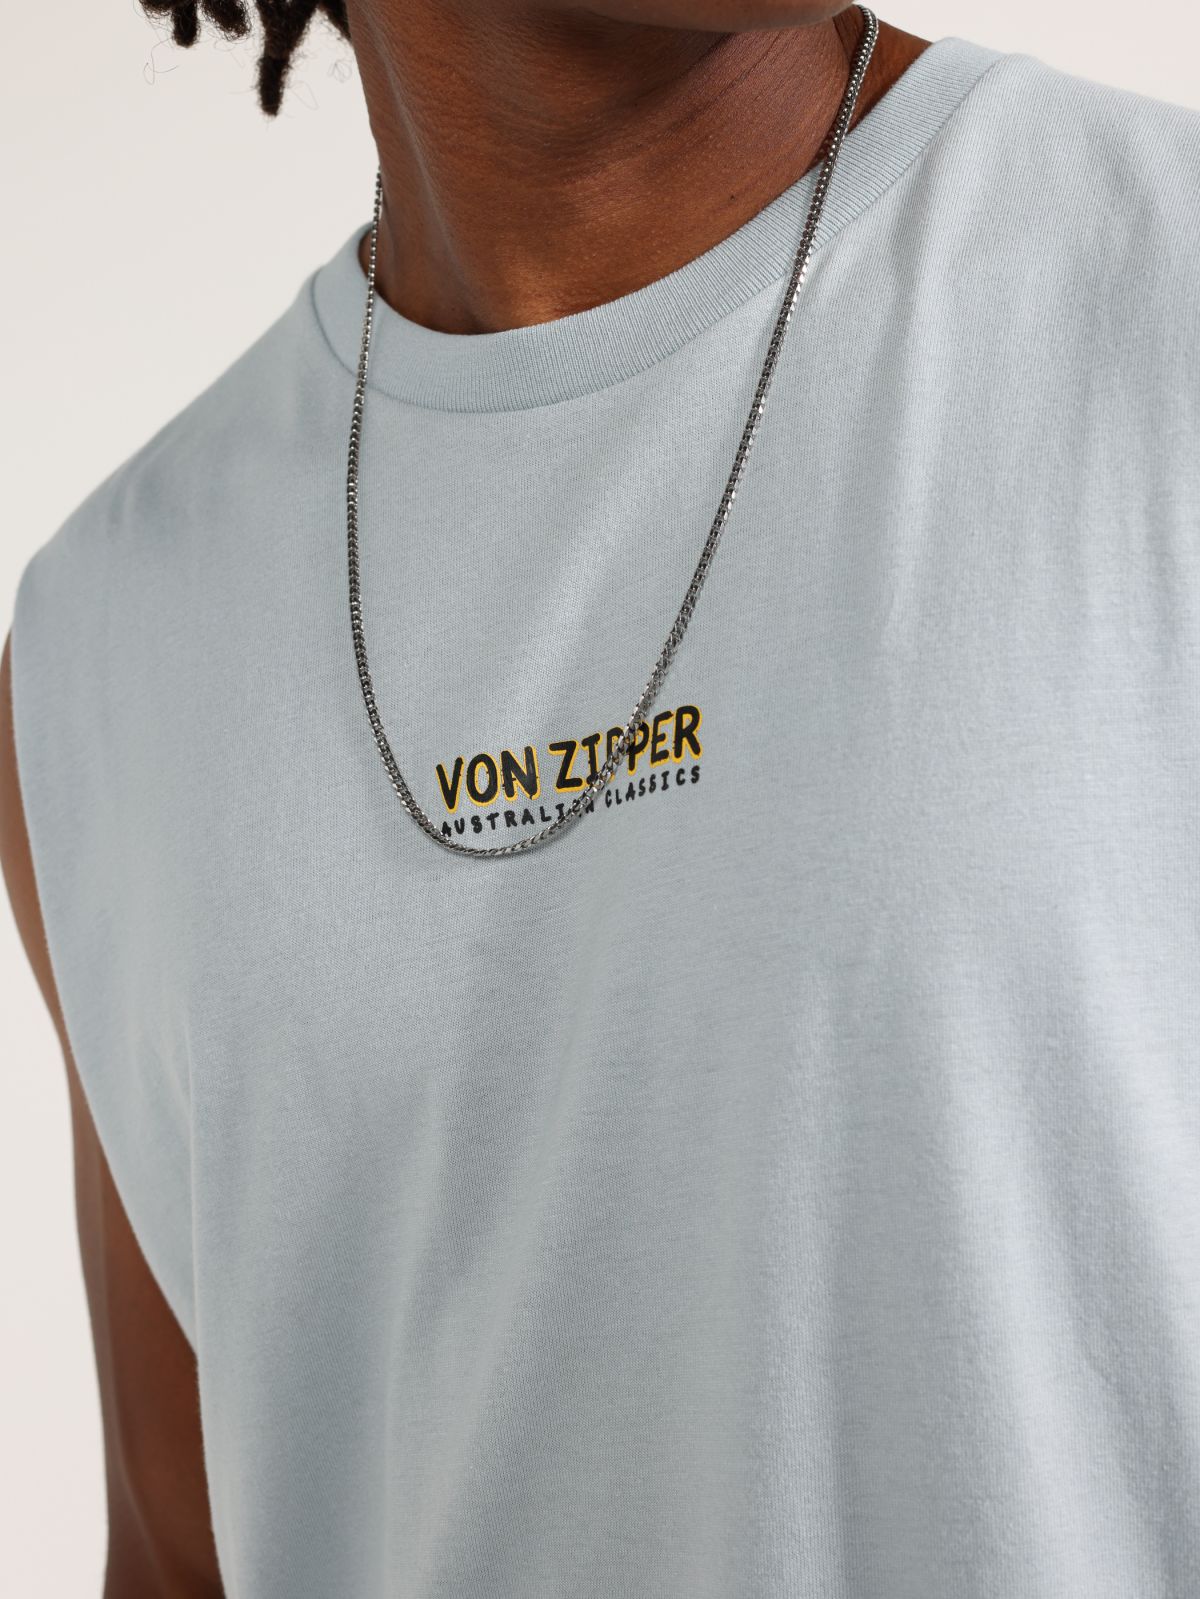  גופייה עם הדפס לוגו של VON ZIPPER